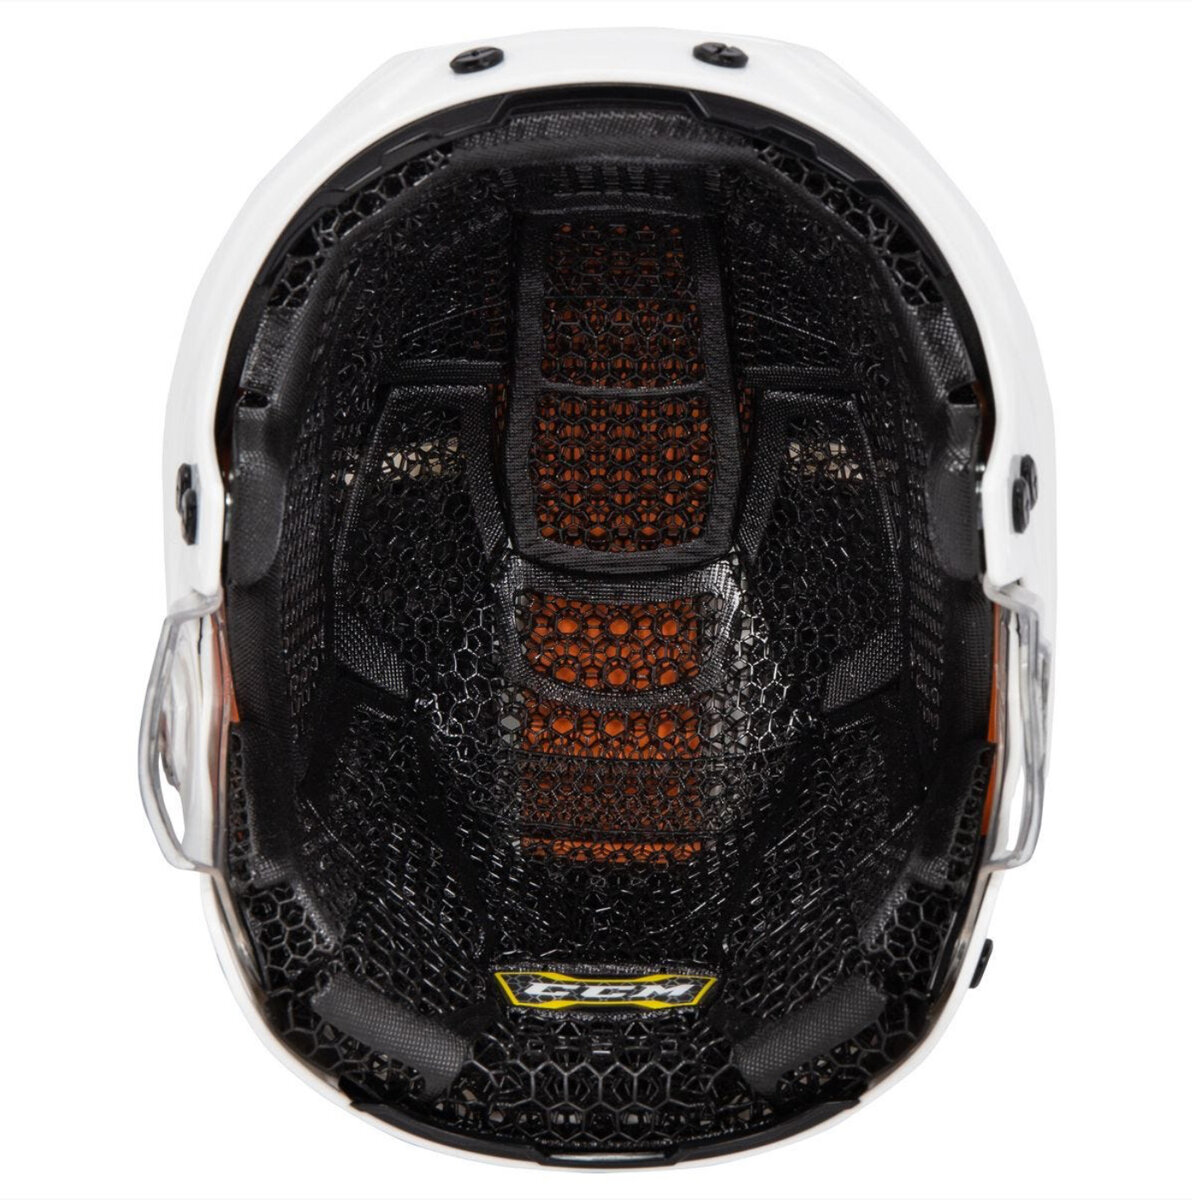 CCM Super Tacks X - следующая эволюция в технологиях хоккейных шлемов Шлем CCM Super Tacks X будет поддерживать вашу голову в отличном состоянии от гудка до гудка.-2